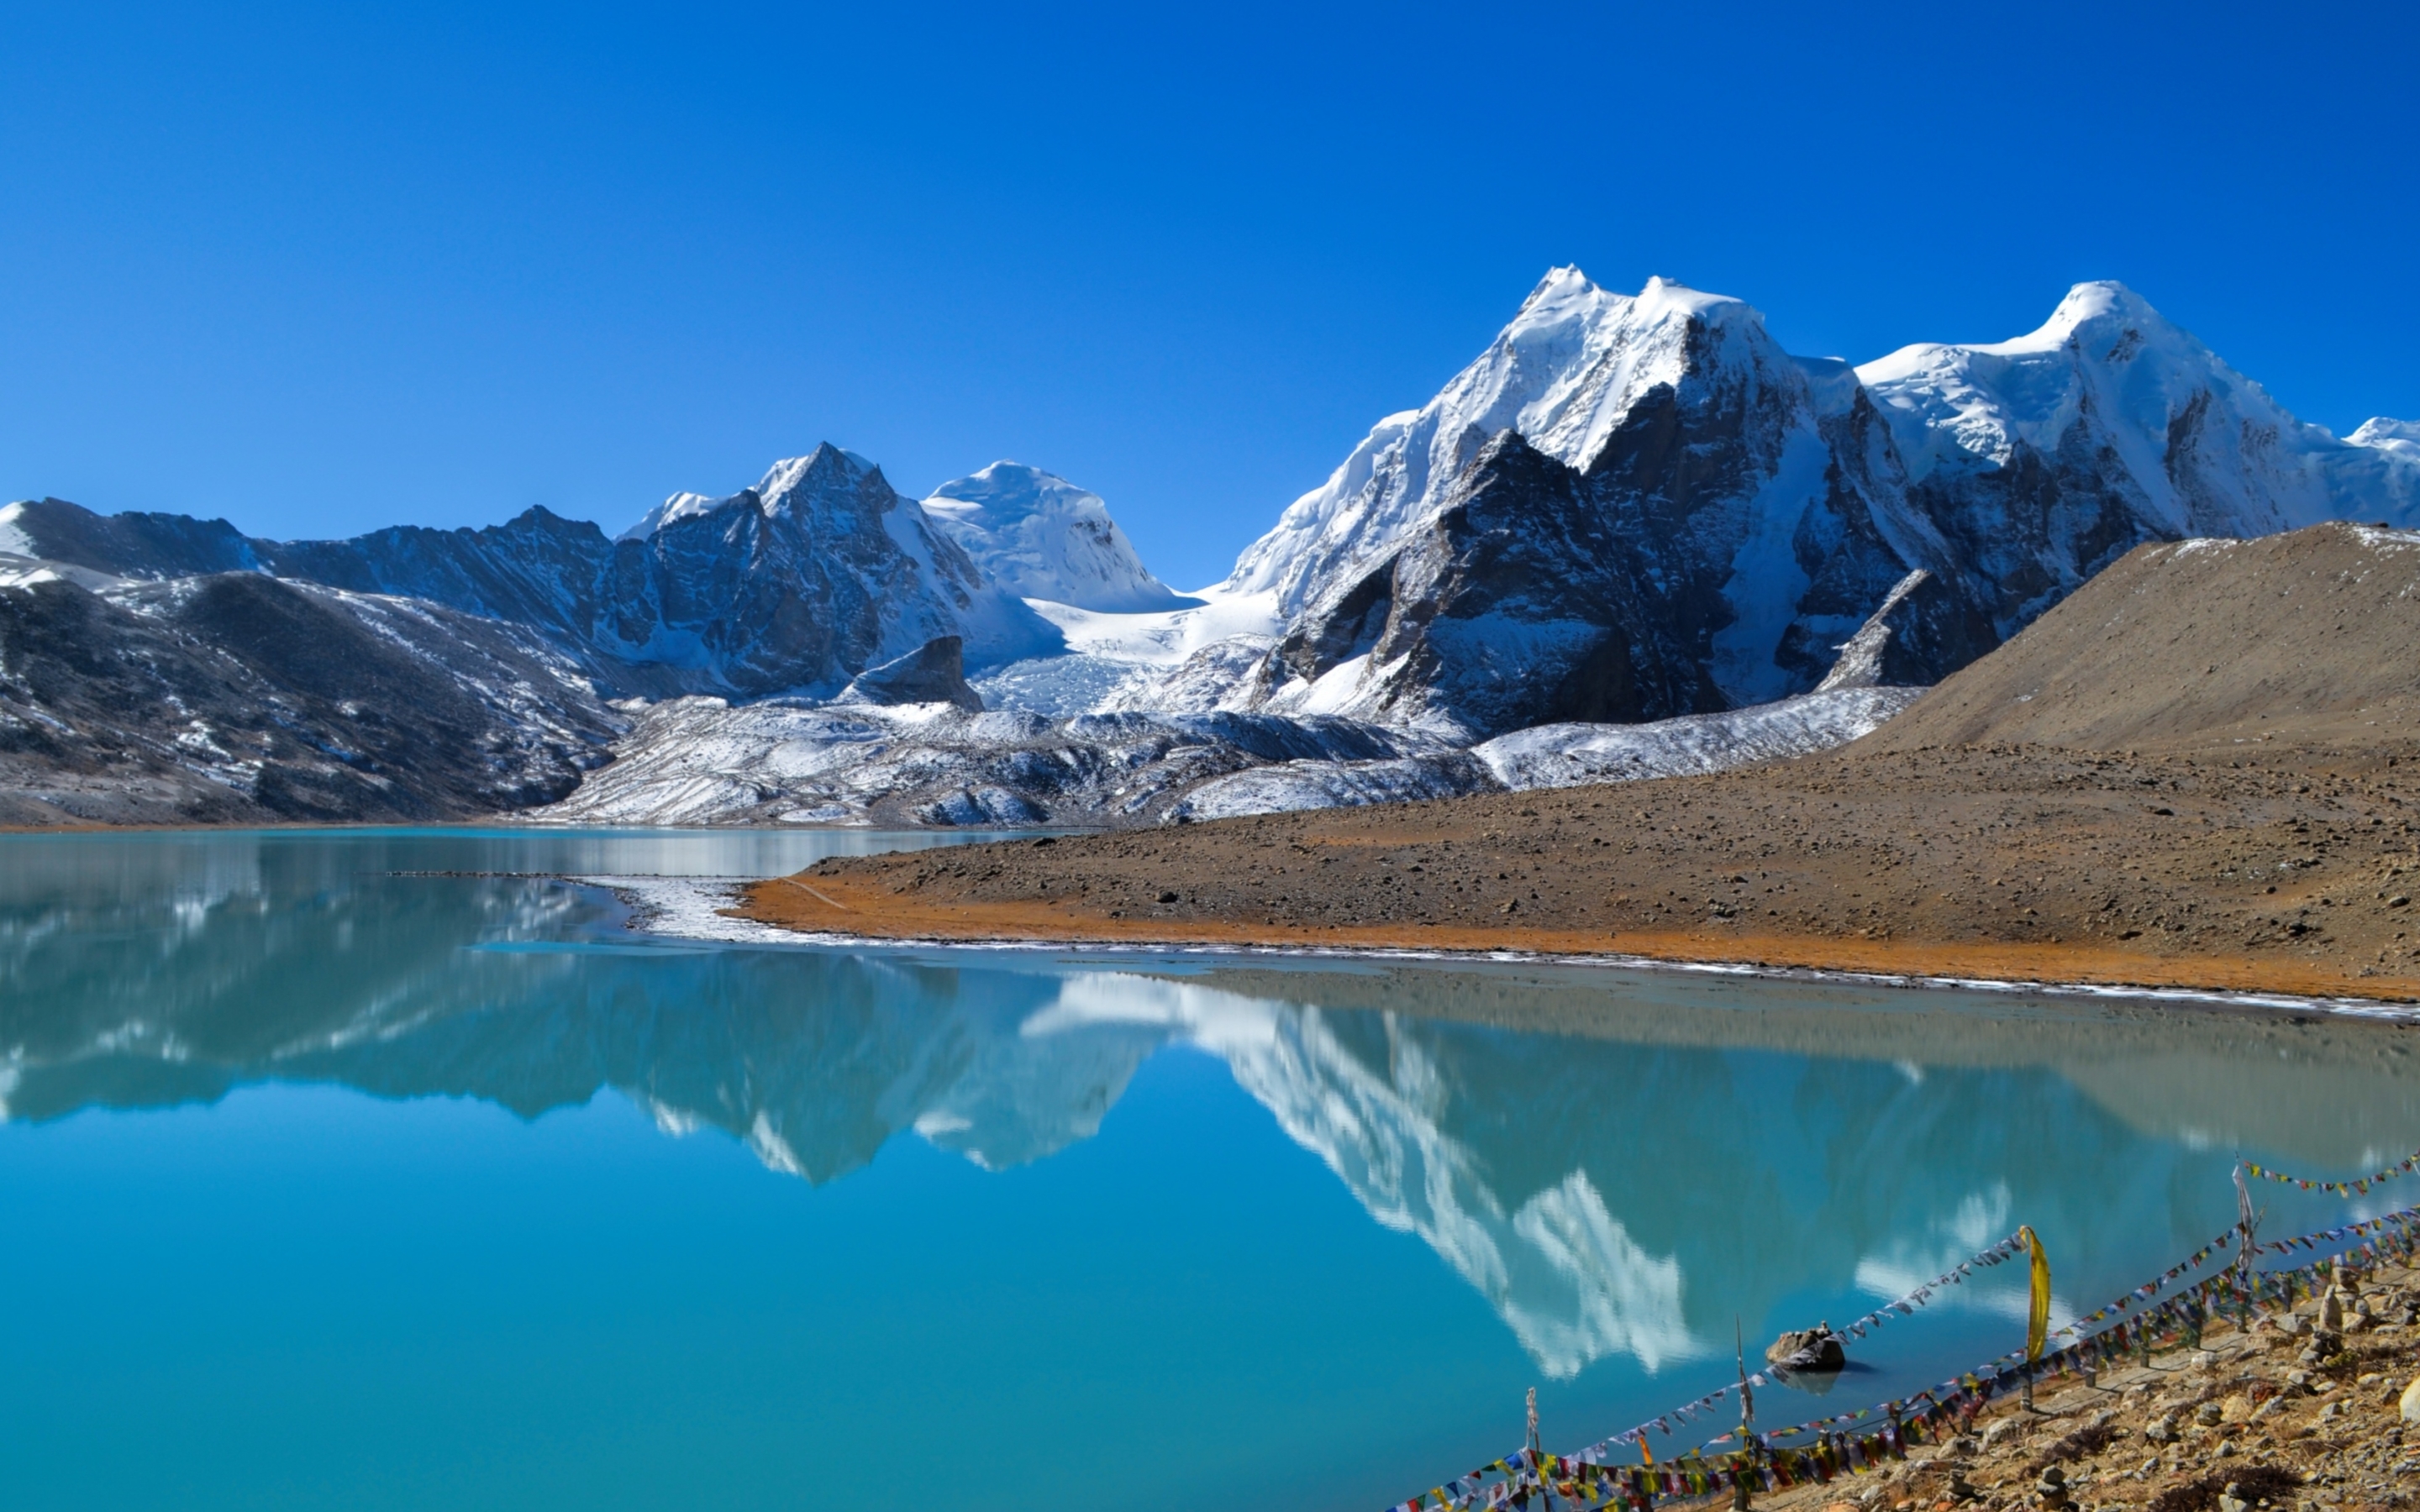 Гималаи море. Тибет Эверест Гималаи. Тибет Гималаи Лхаса. Тибет ...Памир...Гималаи. Озеро в Гималаях.